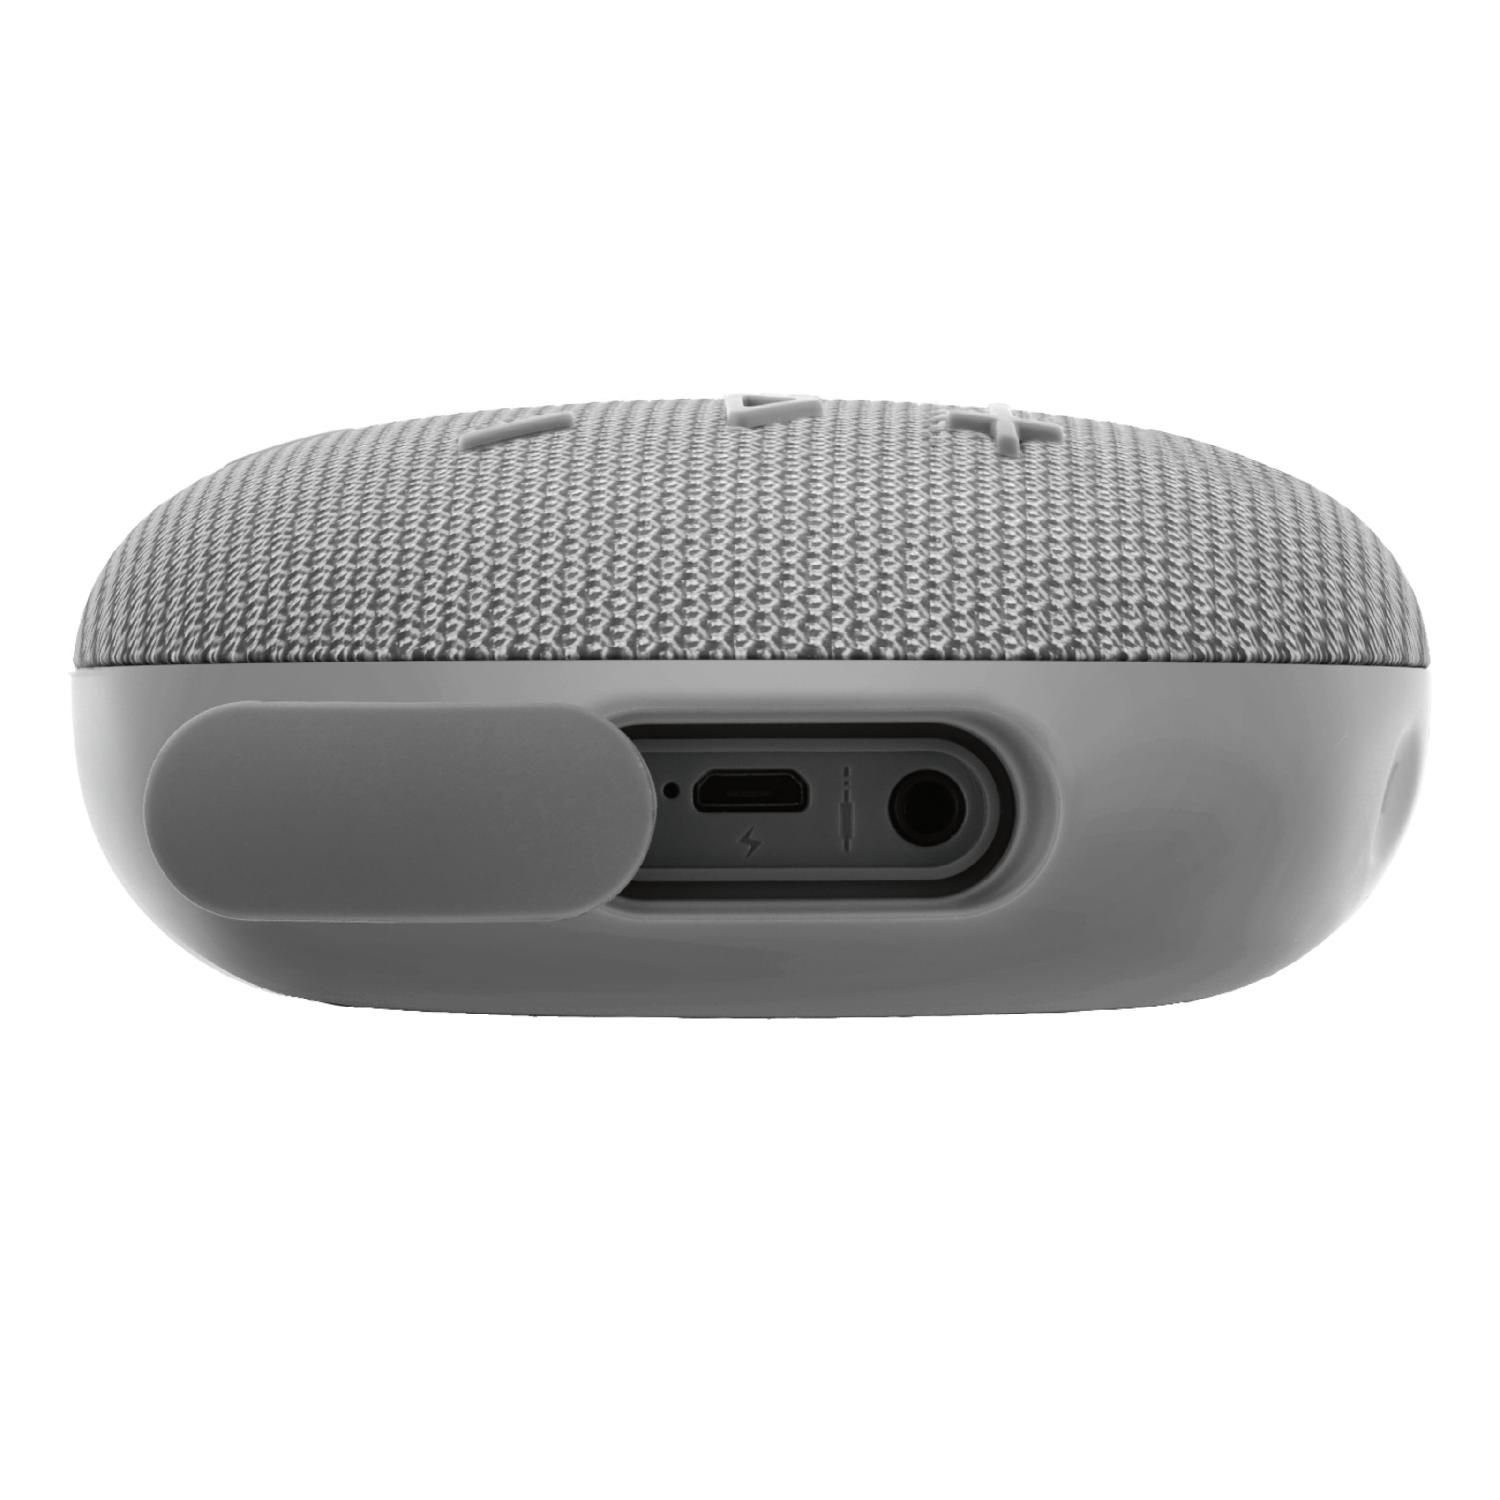 inkl. Jahre 5 mit Herstellergarantie) Speaker TWS Bluetooth-Lautsprecher Bluetooth (Bluetooth, wasserdicht, Lithium IPX7 Hochtöner, STREETZ Akku und hellgrau W, 5W Subwoofer, Kompakter 5